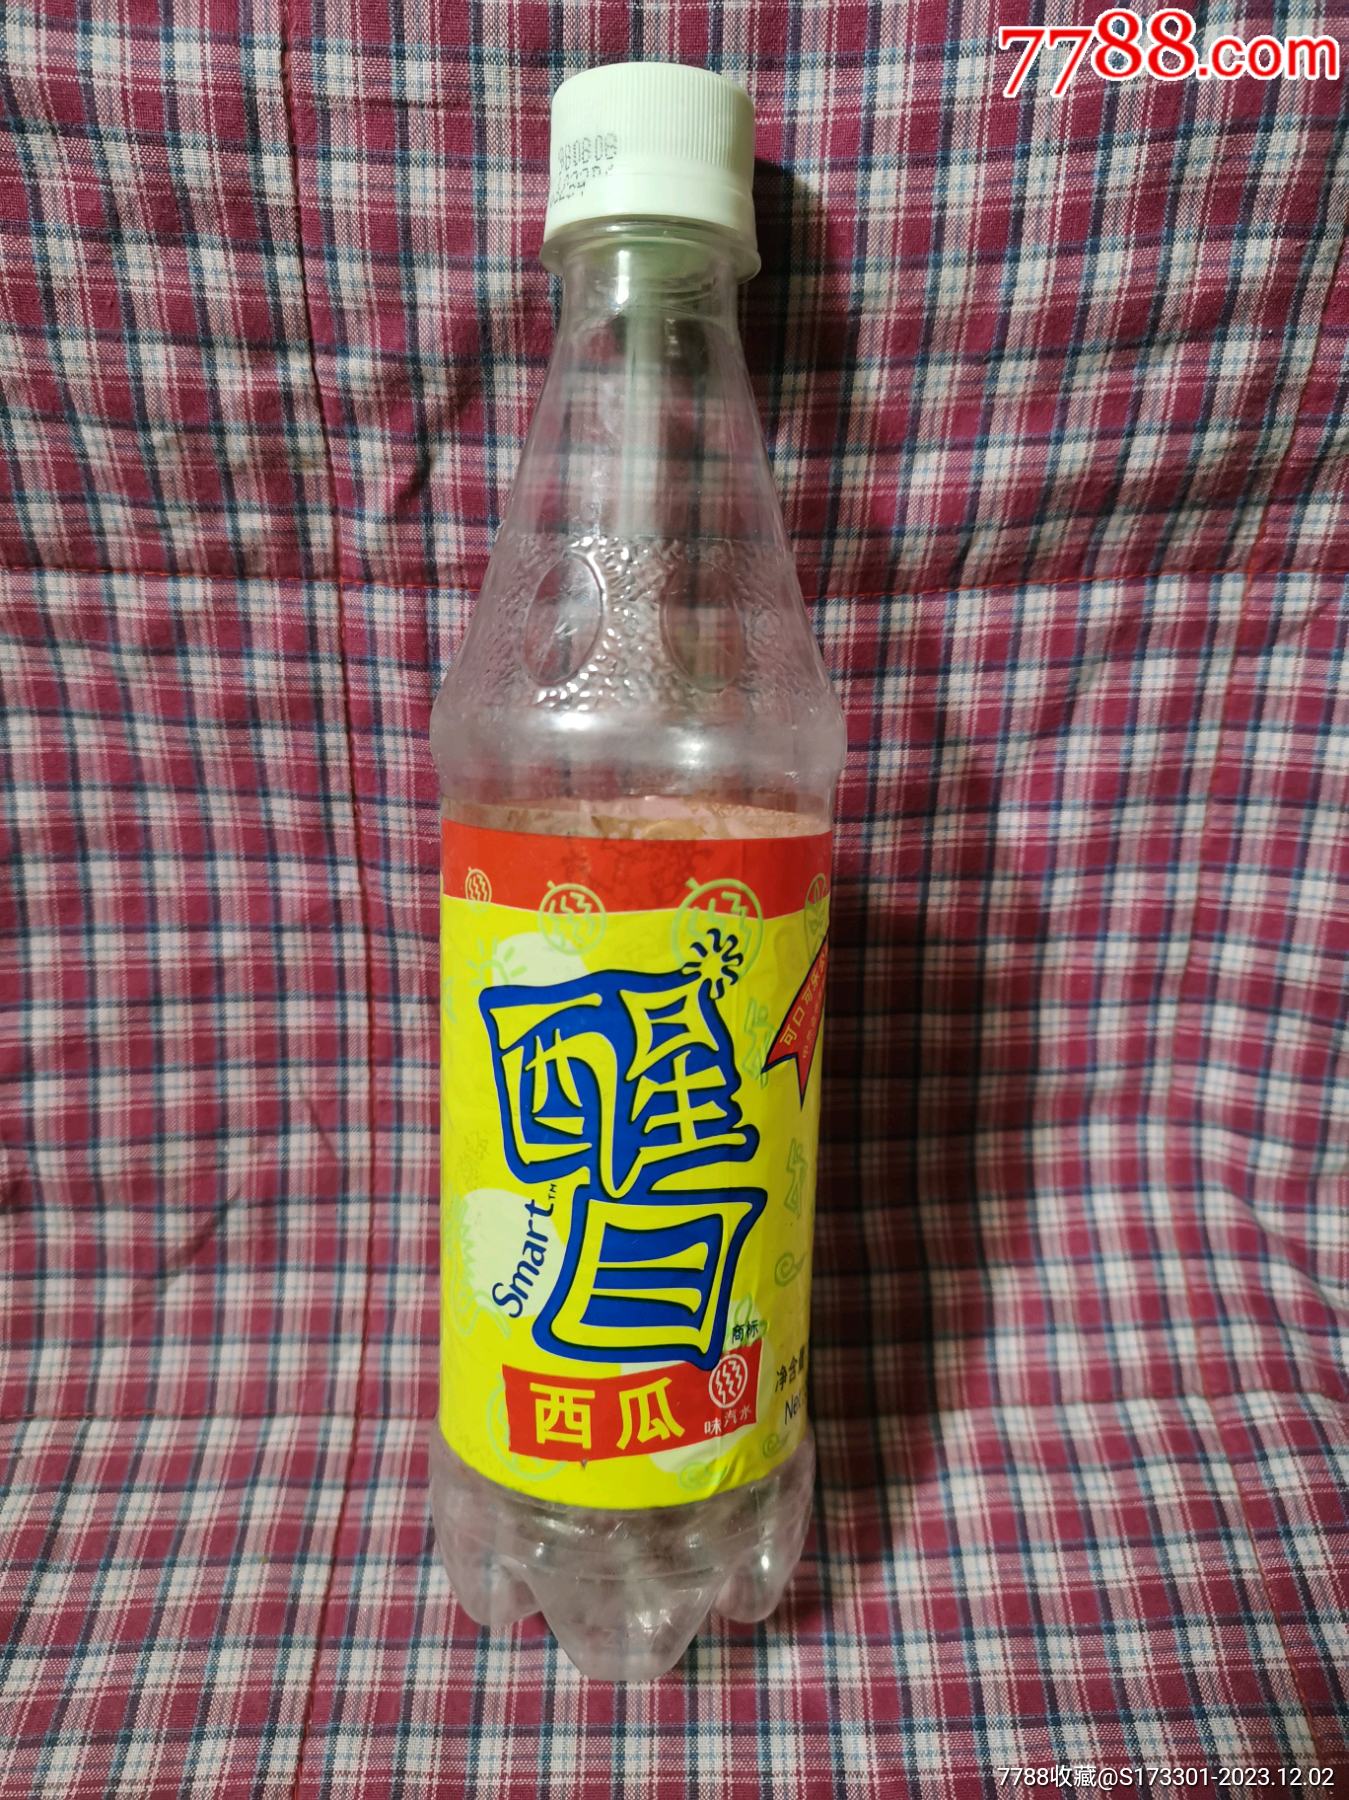 活在现在-中国新年而设计的百事可乐罐-可爱特别醒目的百事可乐罐